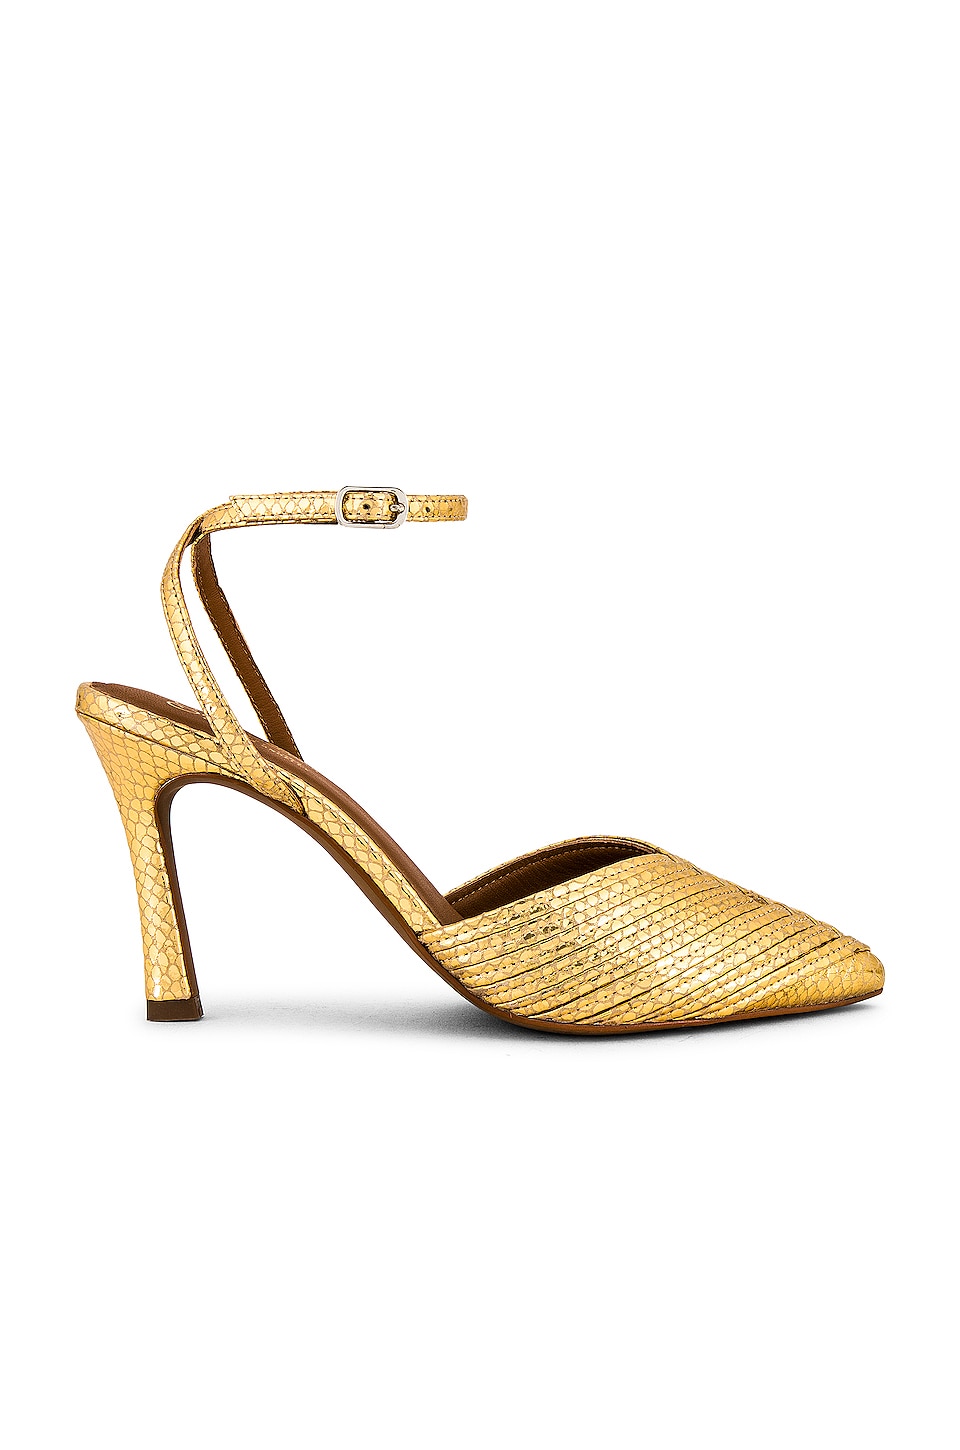 Celine Ankle Strap Heel - Gold – Haute & Rebellious